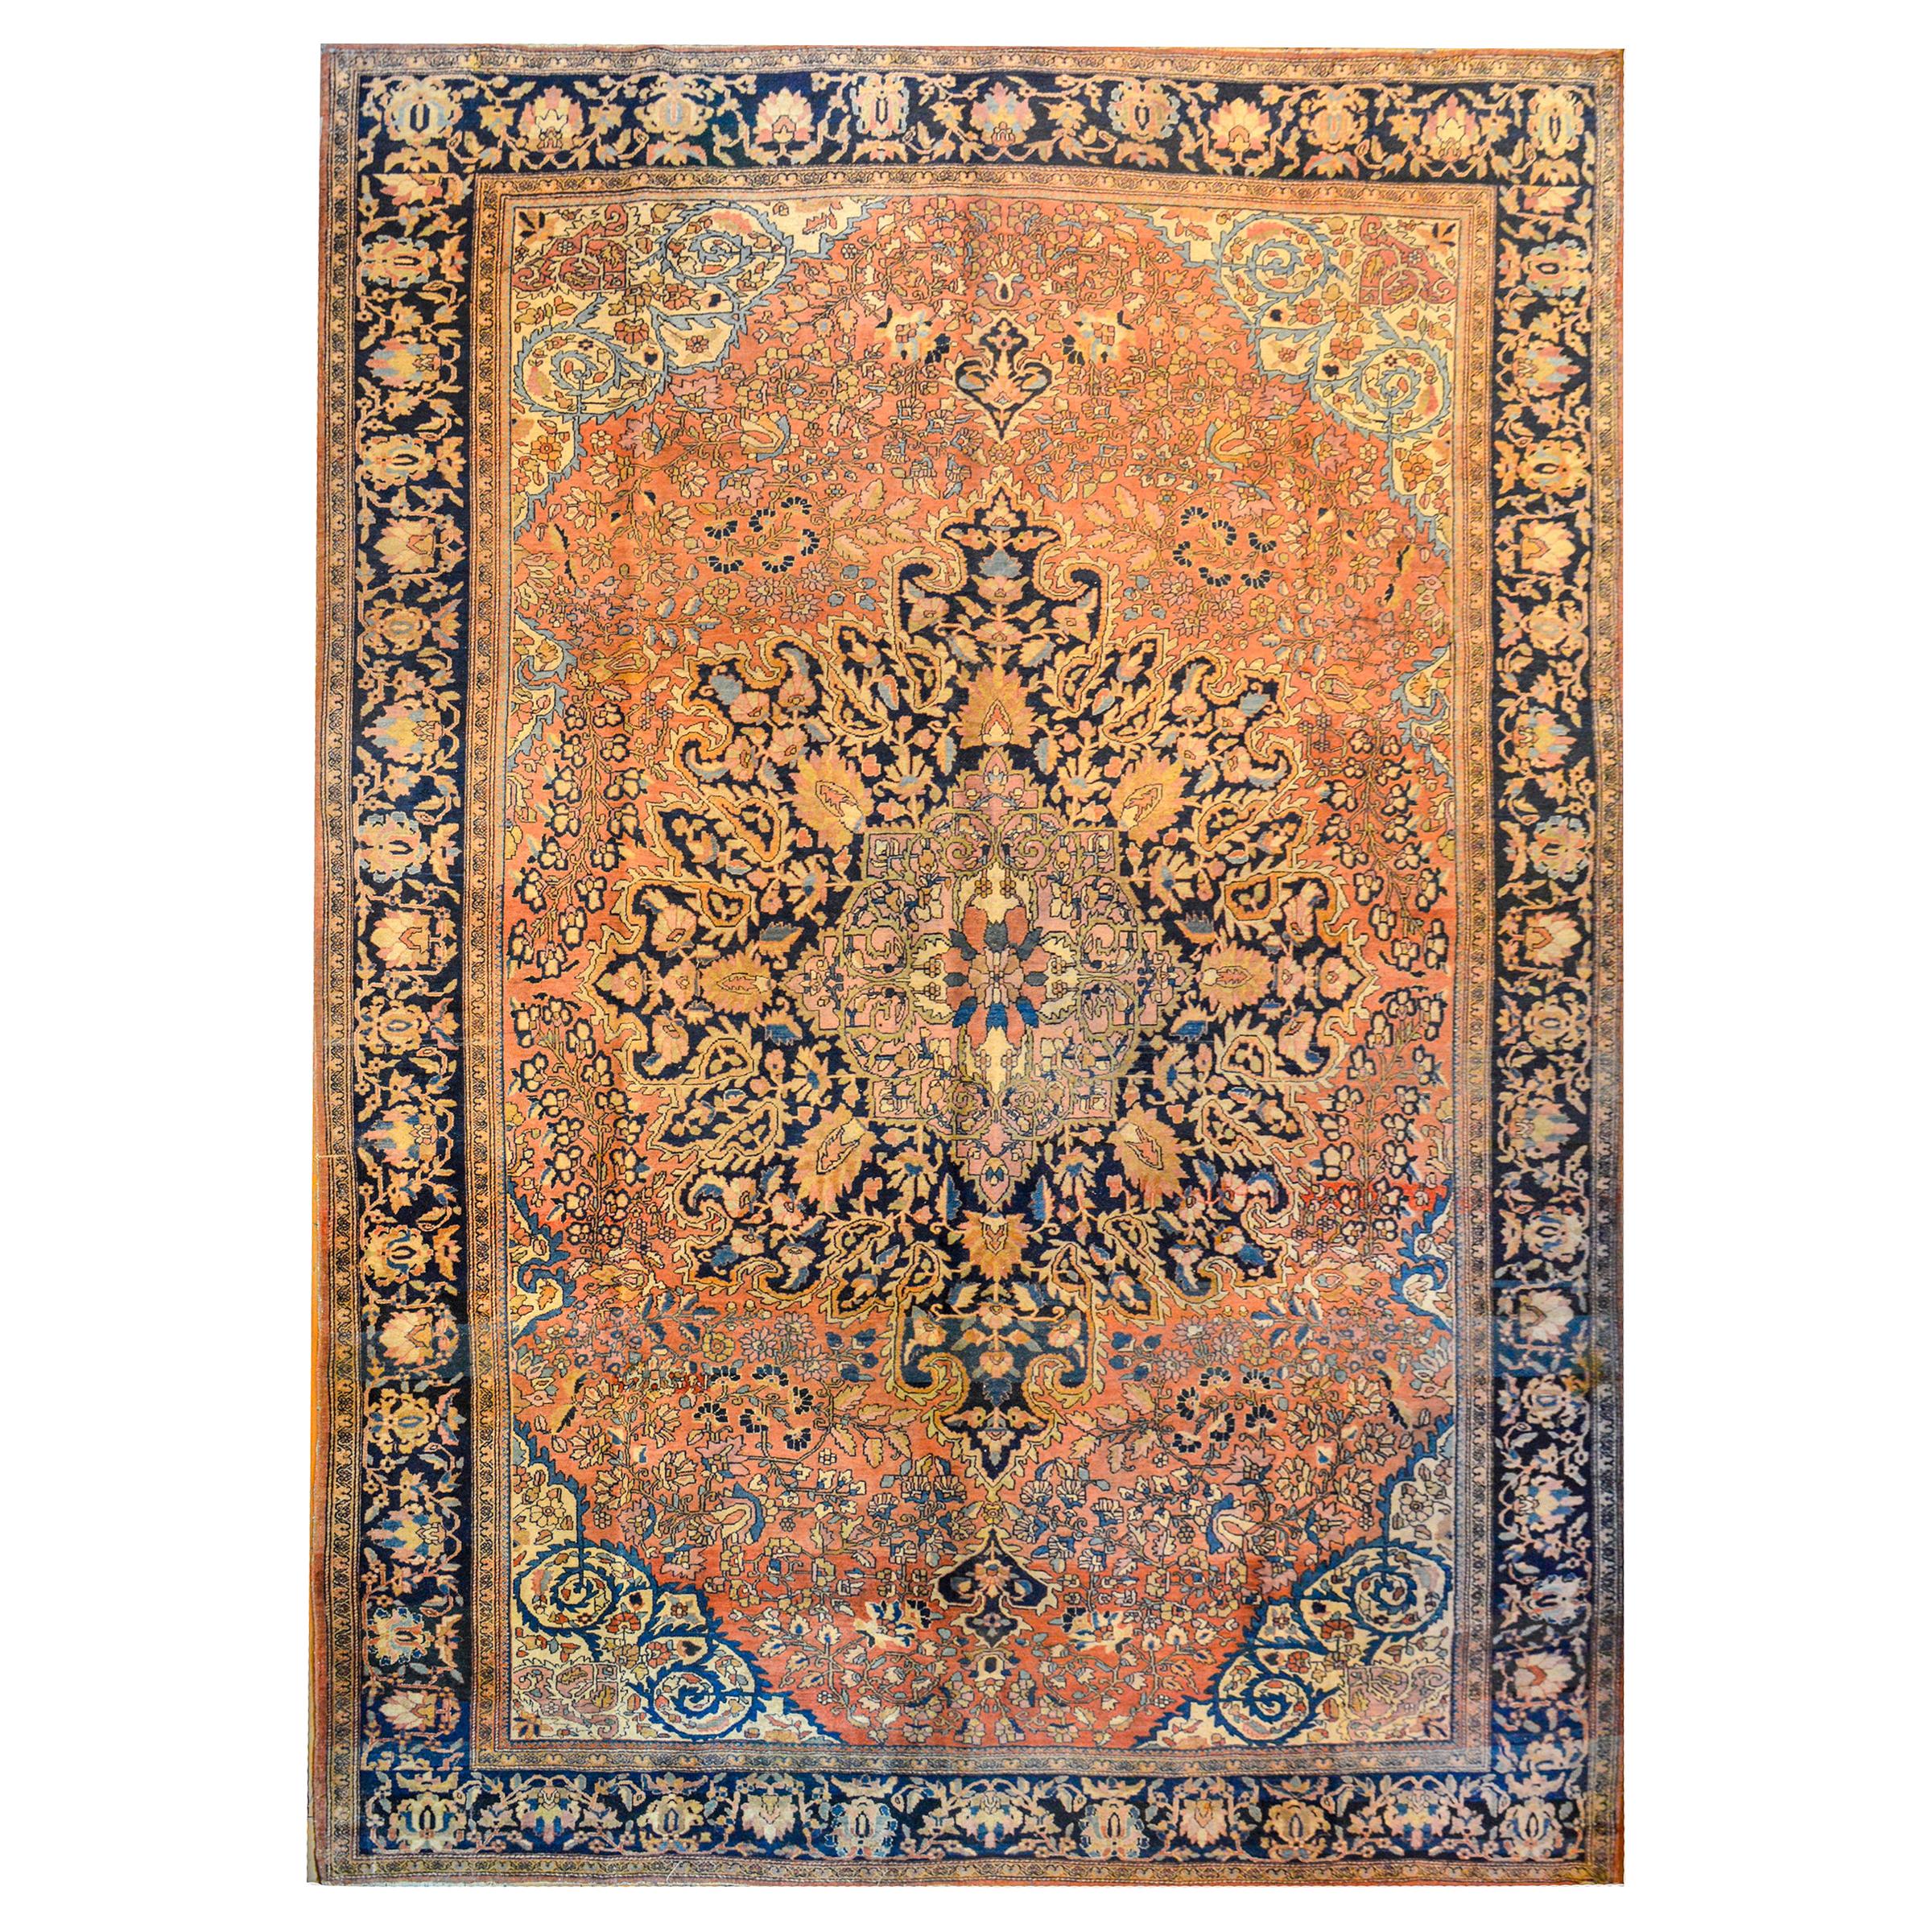 Wunderschöner Sarouk Farahan-Teppich aus dem frühen 20. Jahrhundert